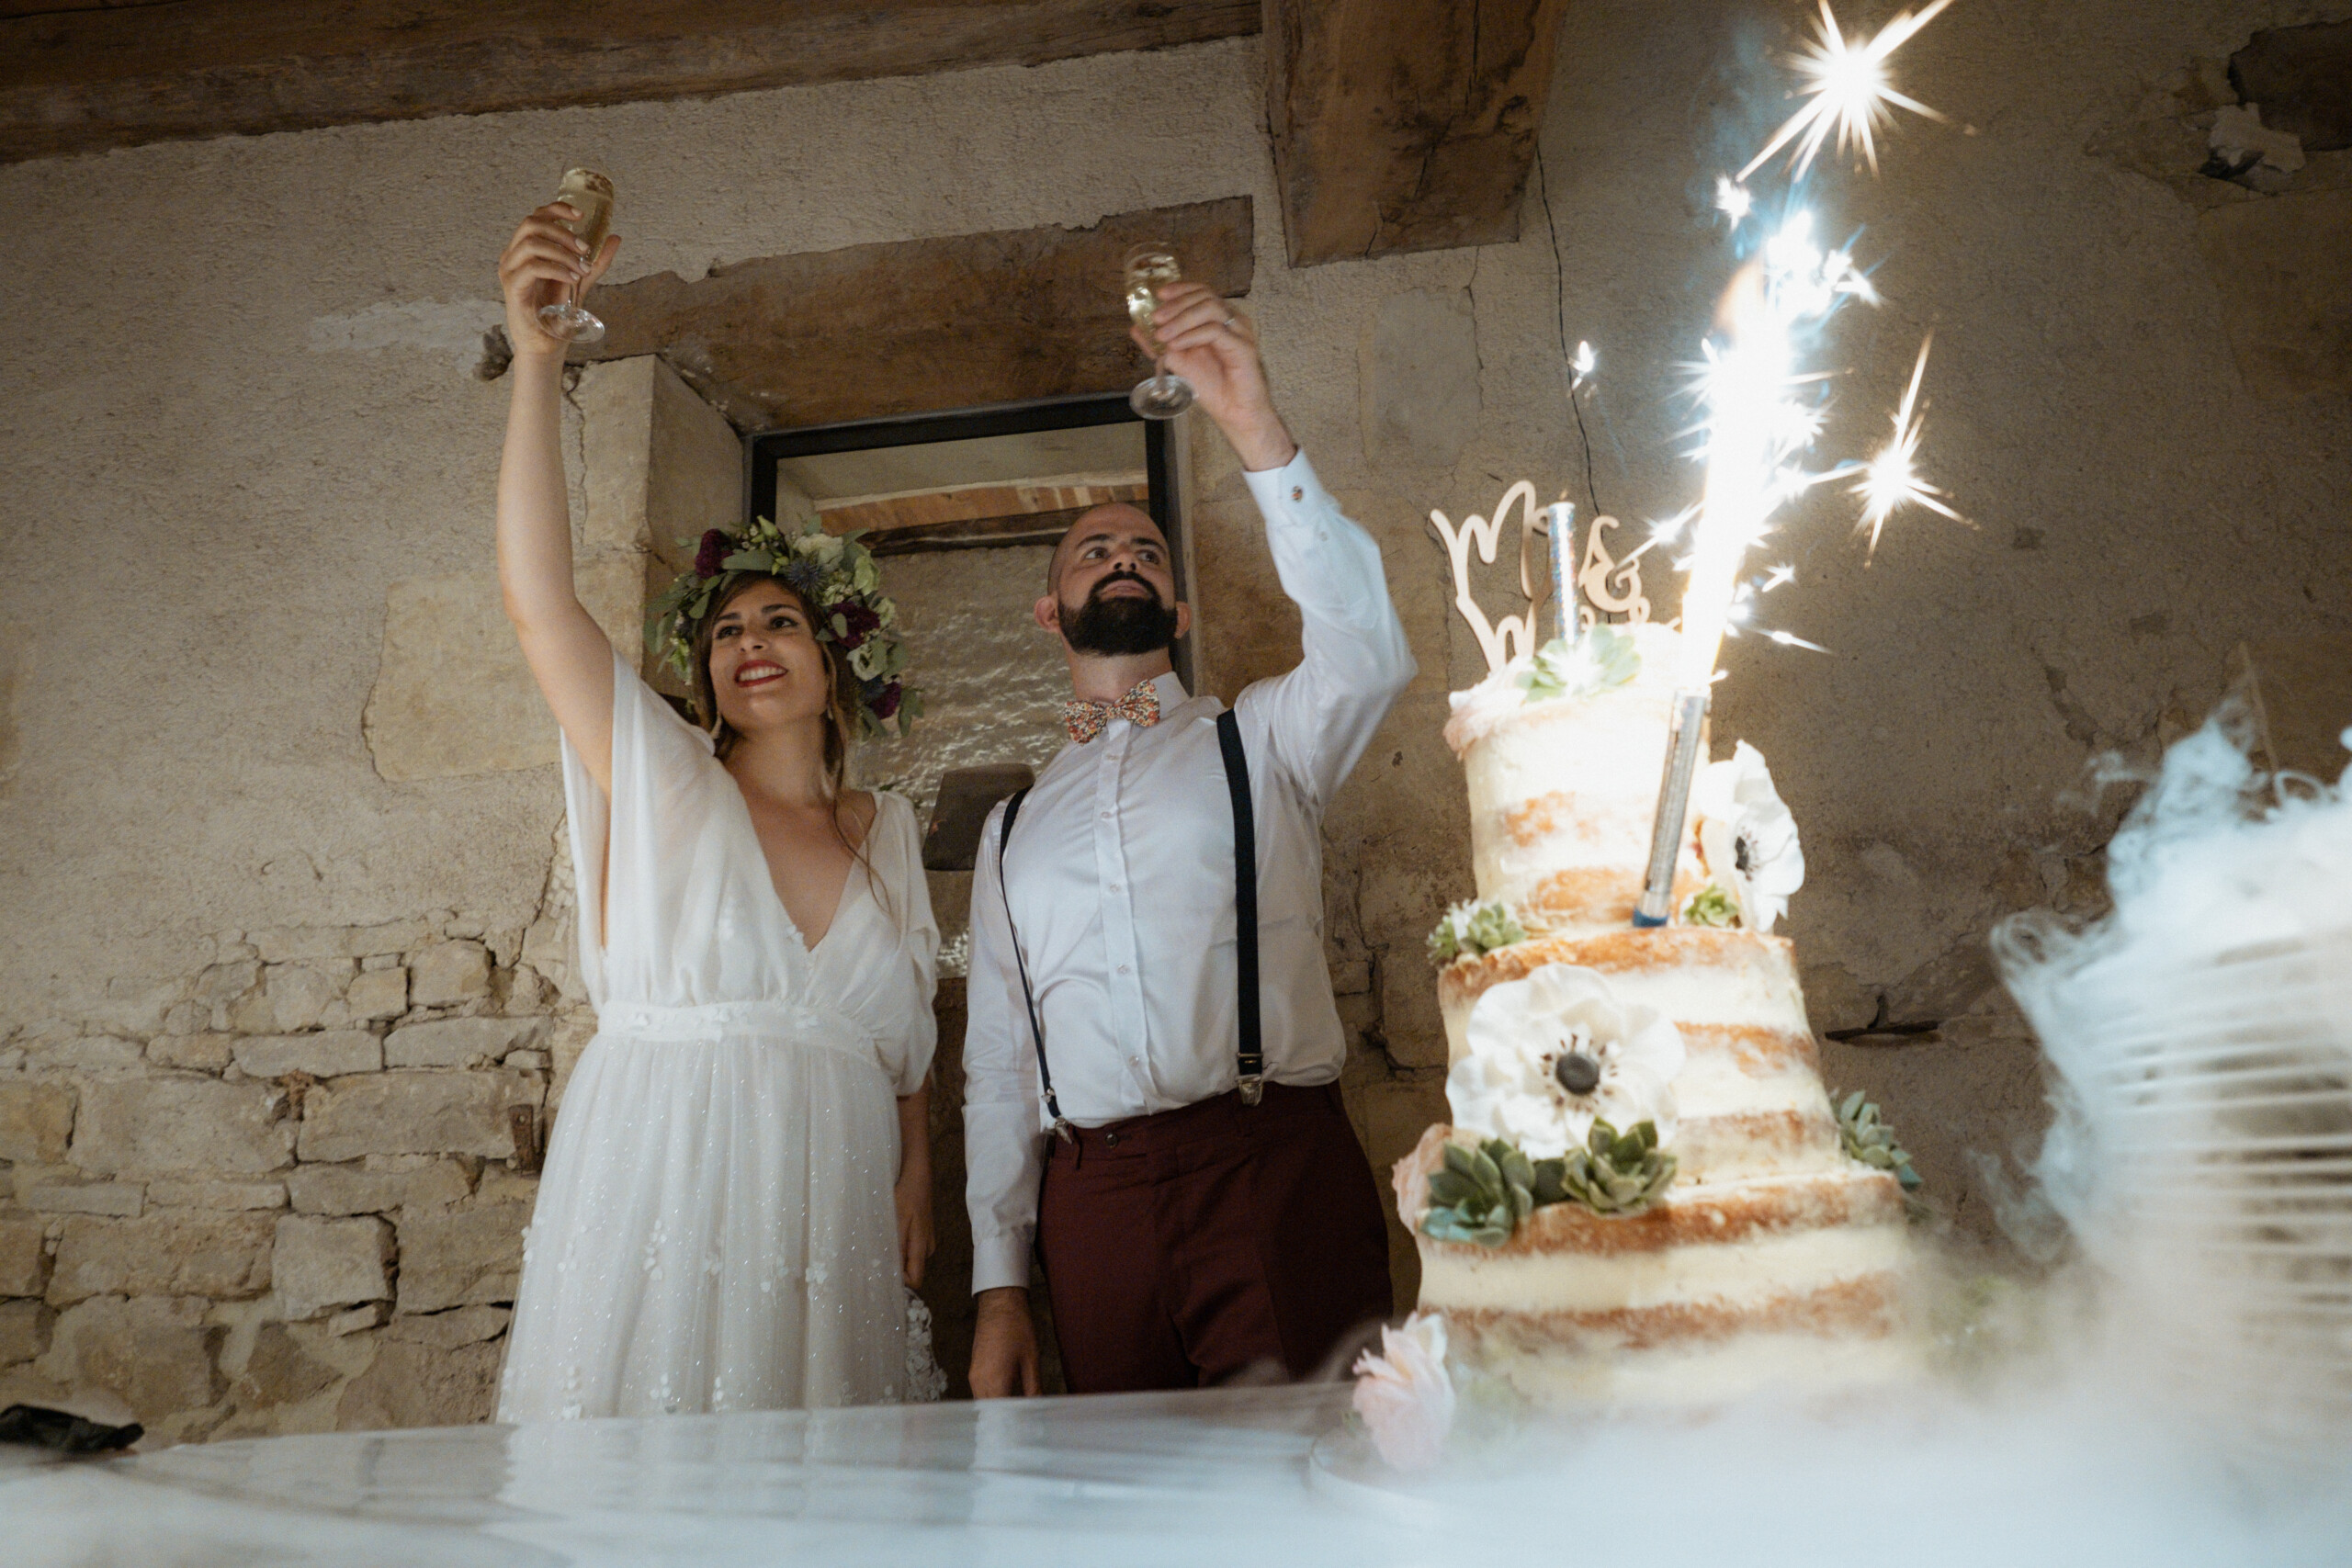 Les mariés trinquent au champagne durant la présentation du gâteau de mariage